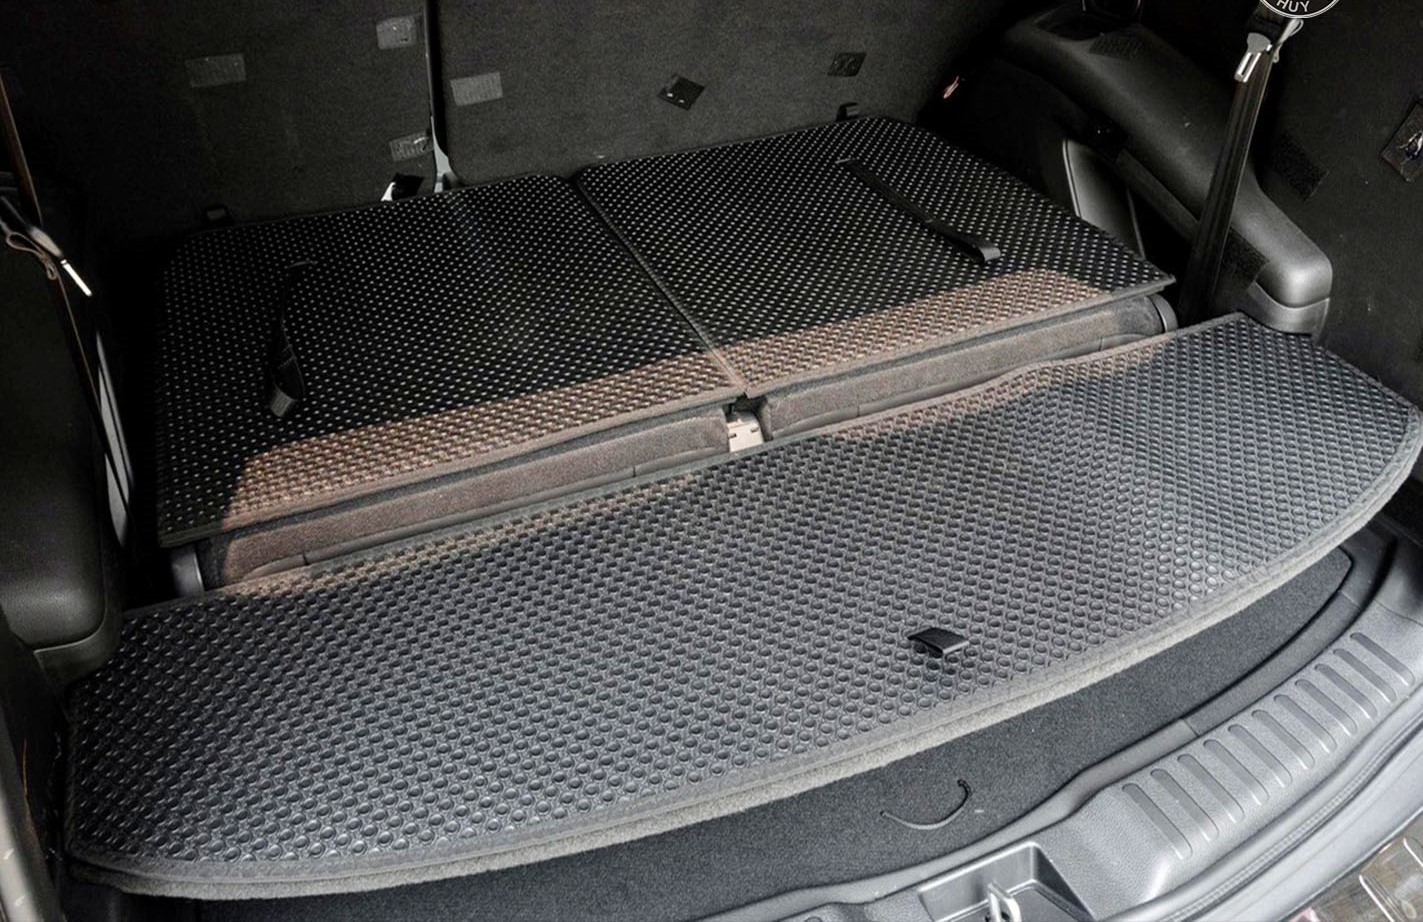 Thảm lót sàn KATA cho xe Honda CRV 2024 (bản 7 chỗ) - Hàng chính hãng không mùi, chống thấm, không ẩm mốc